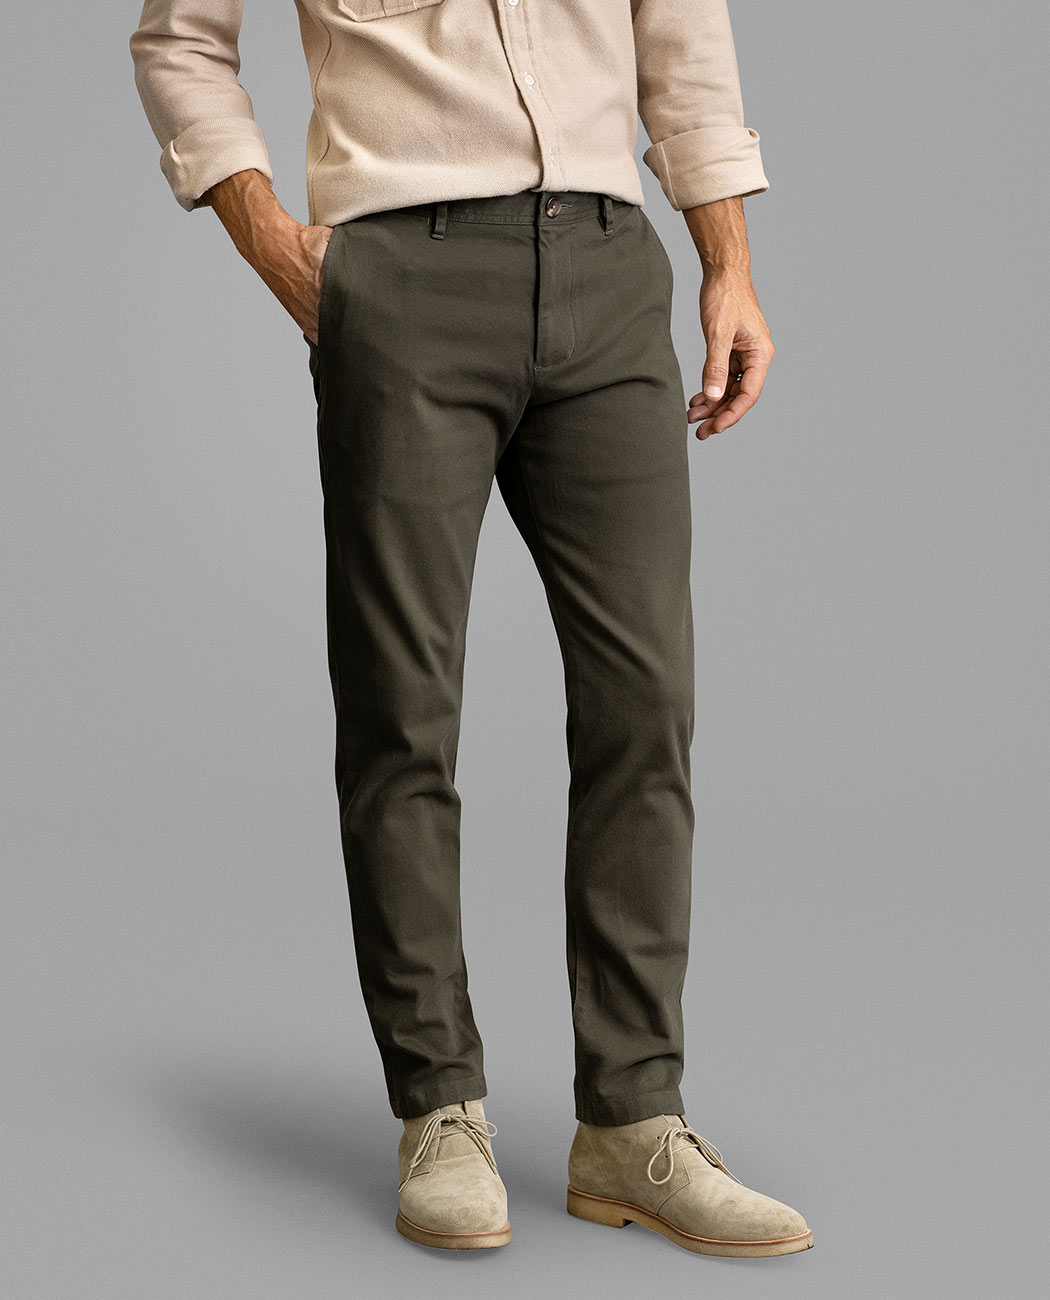 Shop Custom Pants | Men's Green Pants - Proper Cloth